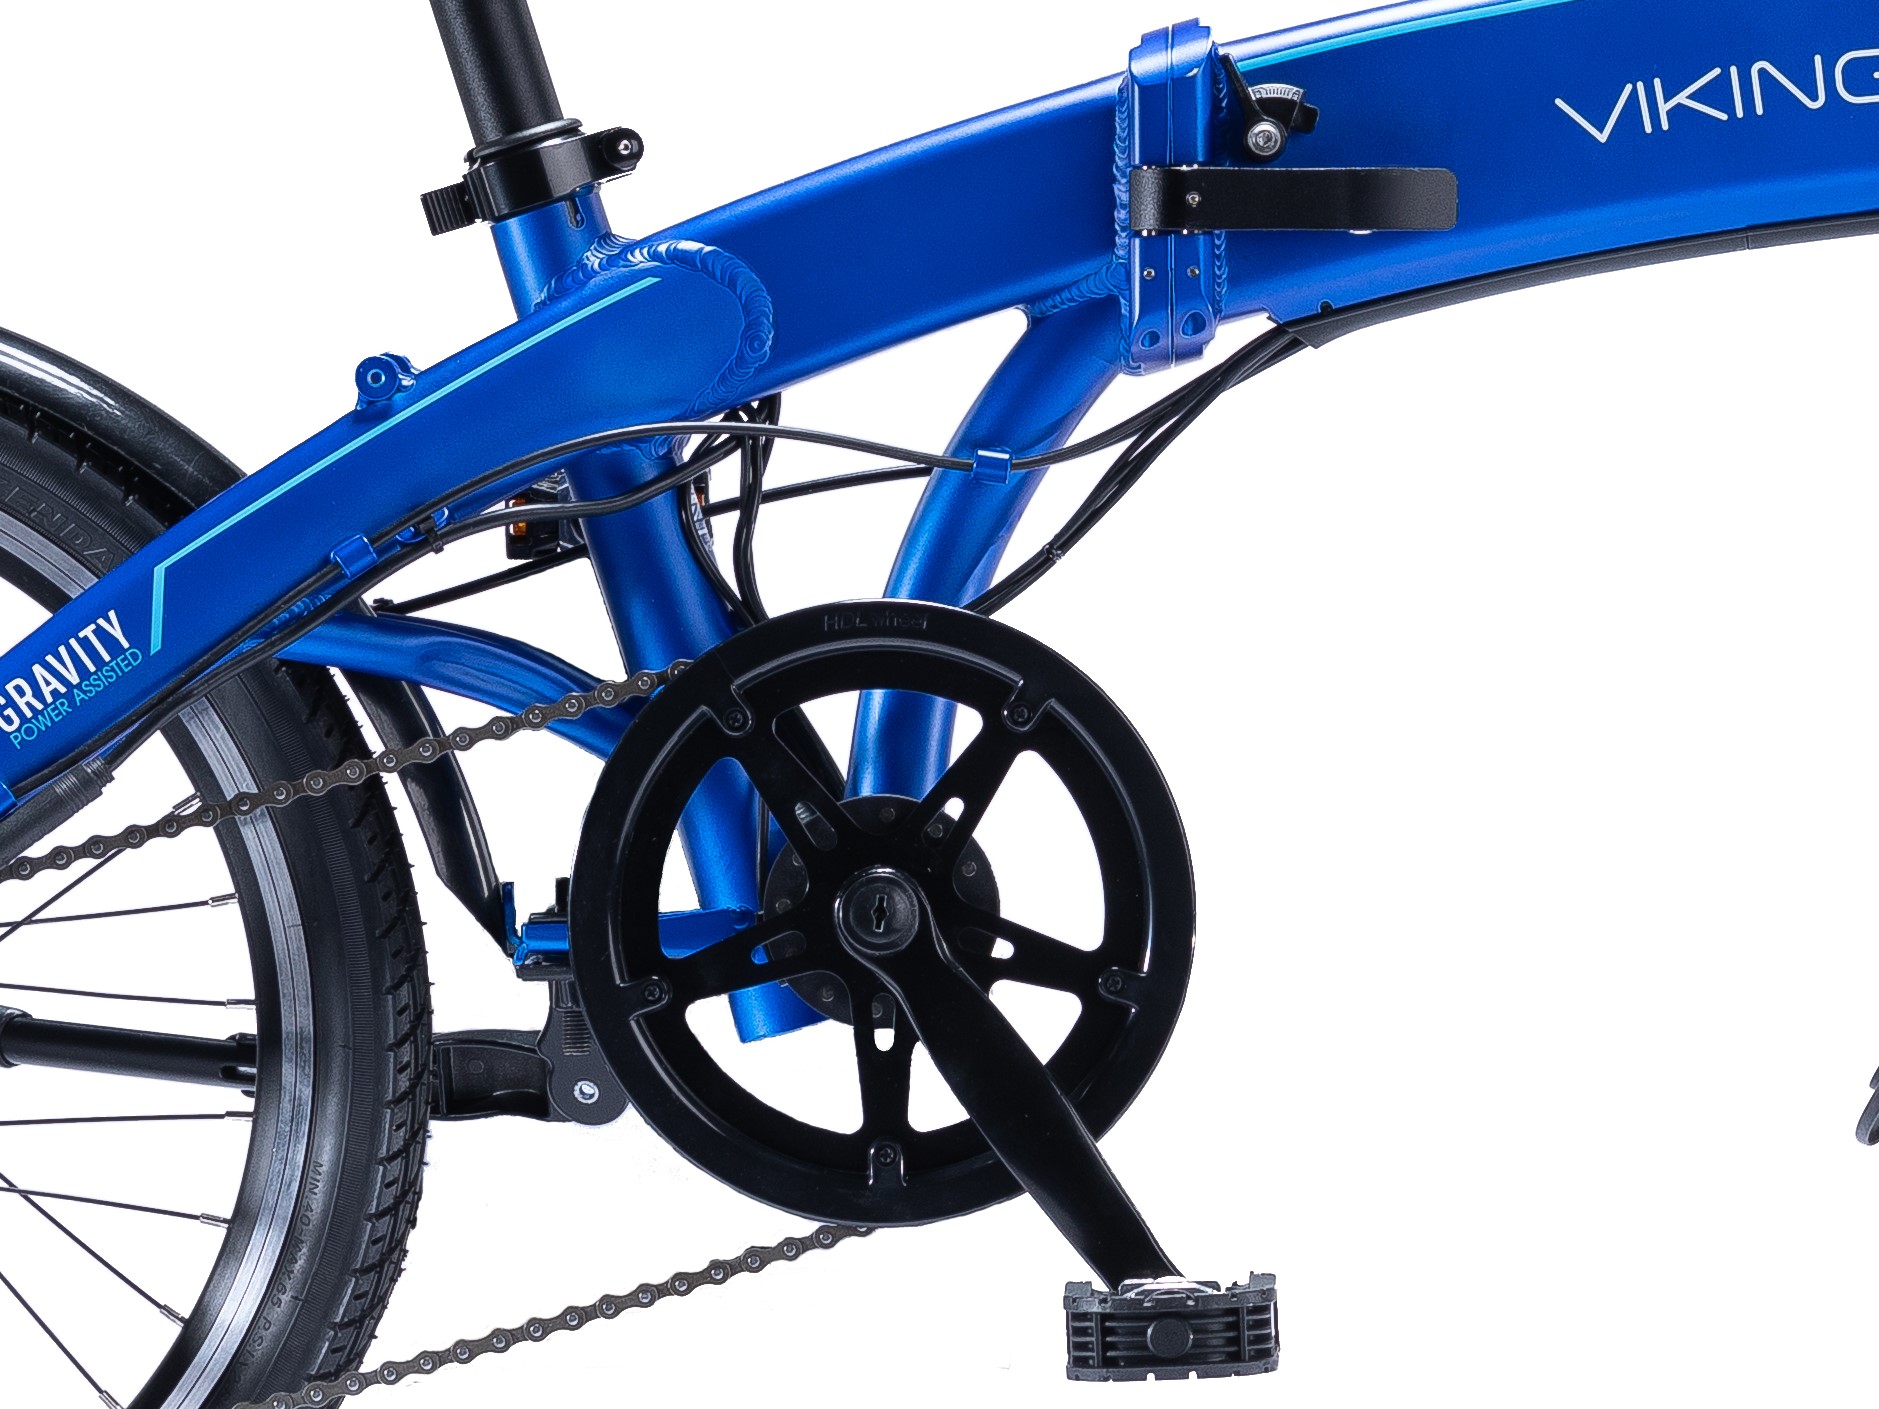 viking gravity electric bike review